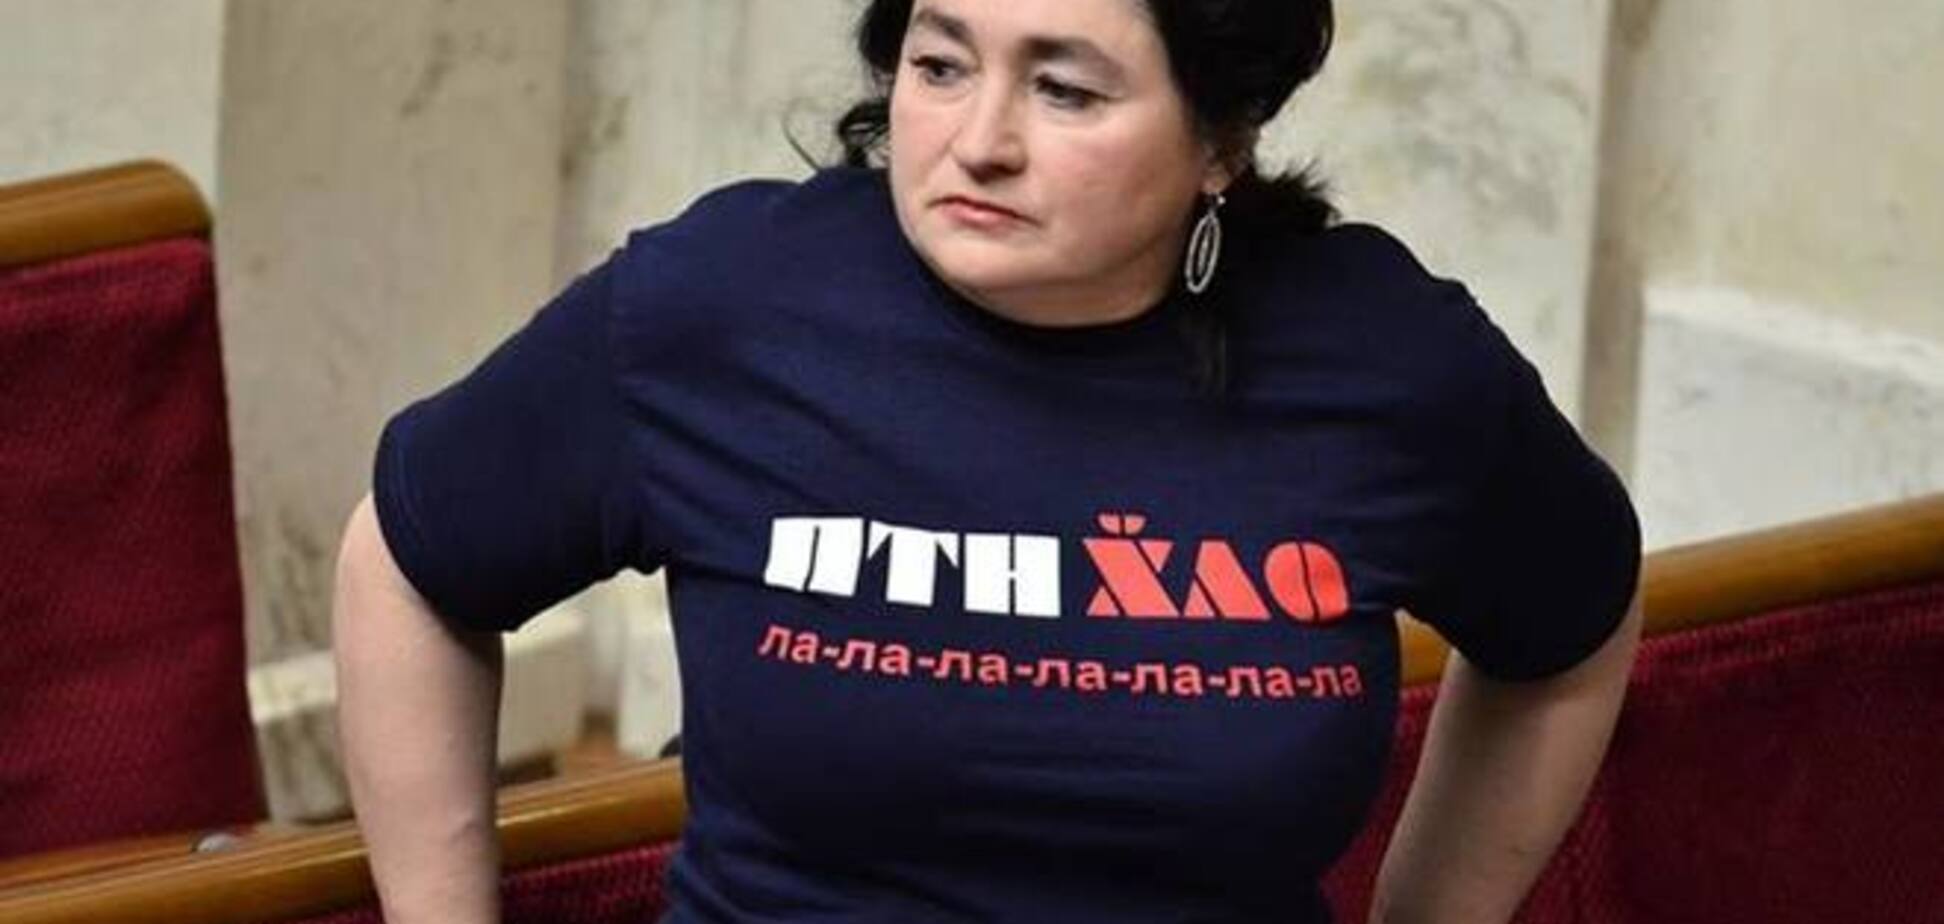 Депутат і письменниця Матіос прийшла в Раду у футболці ПТН Х ** ЛО